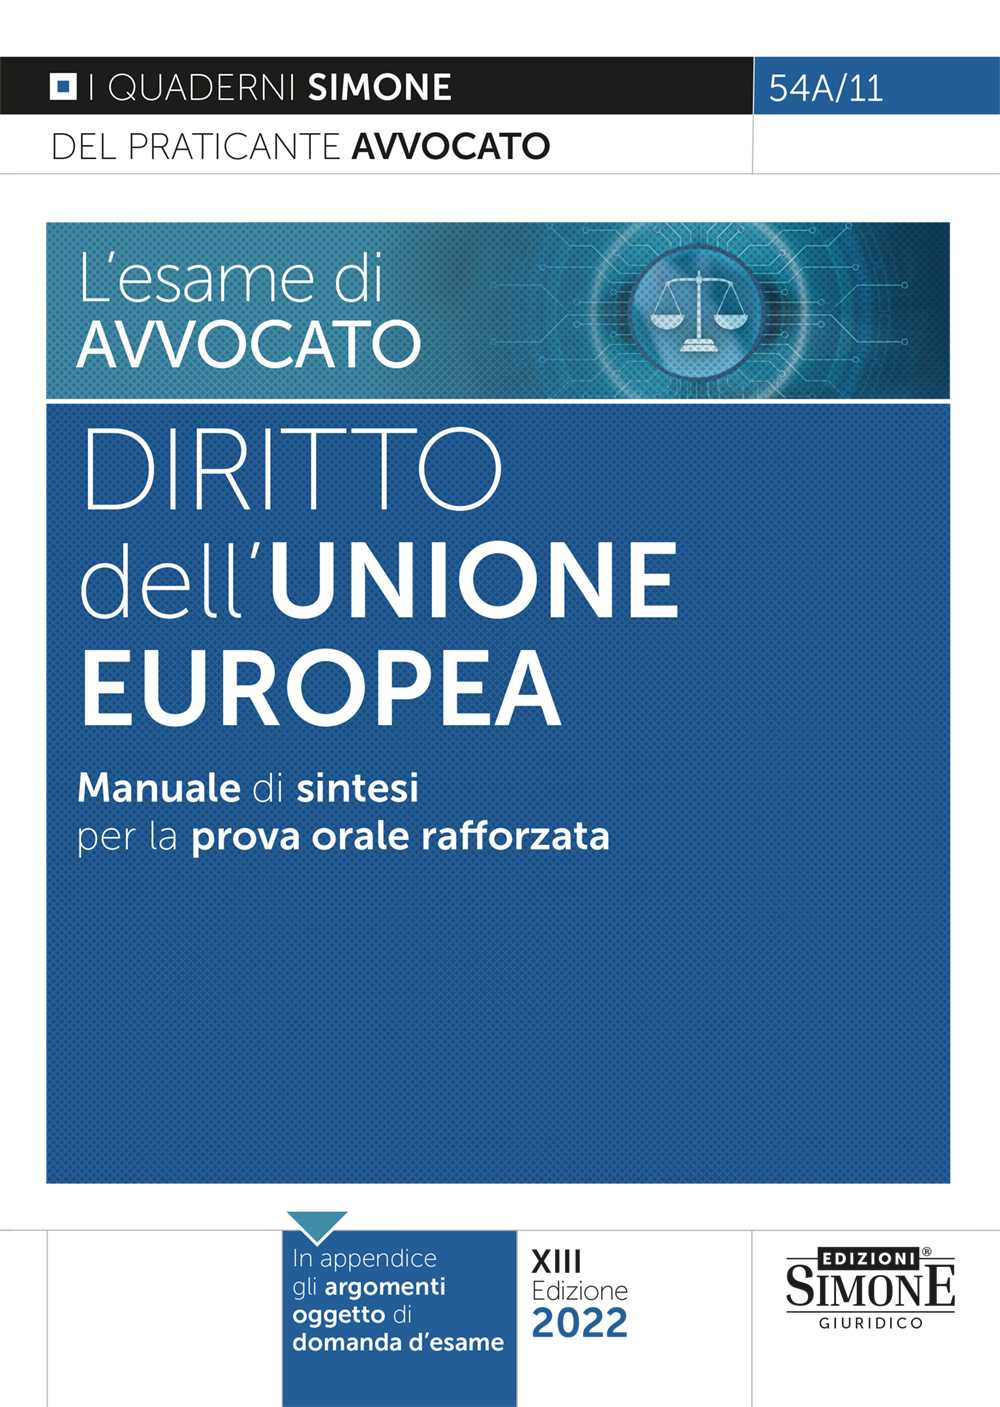 [Ebook] L'esame di avvocato - Diritto dell'Unione Europea - Manuale di sintesi per la prova orale rafforzata